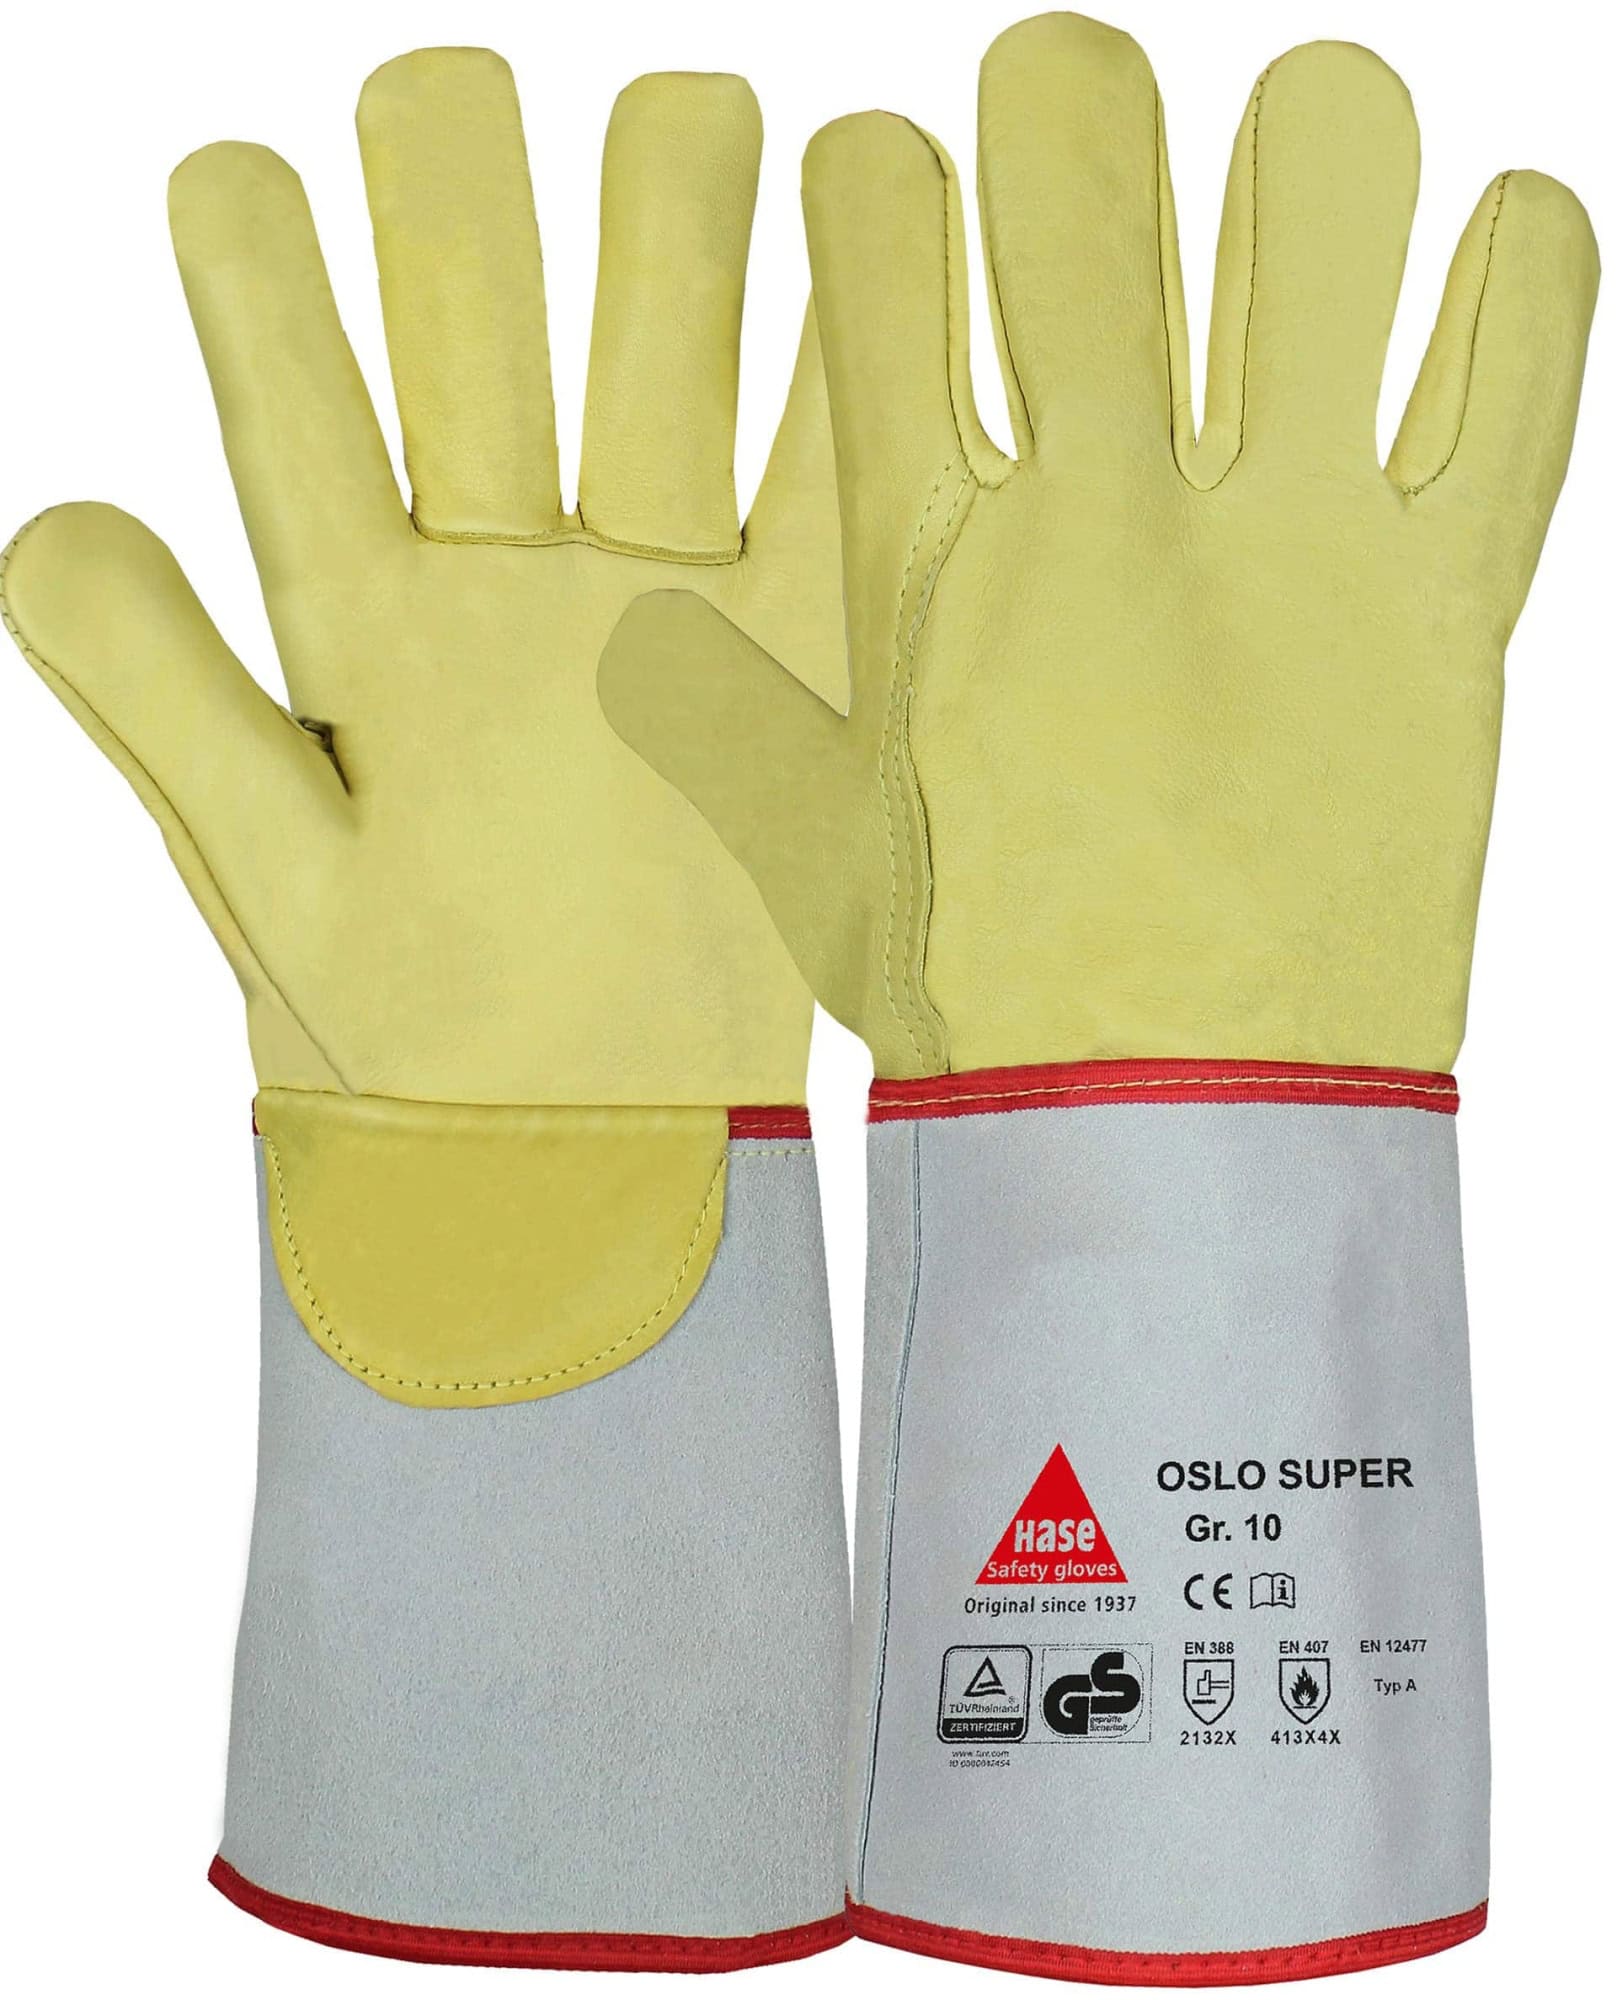 Hase Safety Gloves® OSLO SUPER 105100-7, Größe 7, Typ A, Kat. II, Natur/Gelb, Schweißerhandschuh für schwere Schweißarbeiten